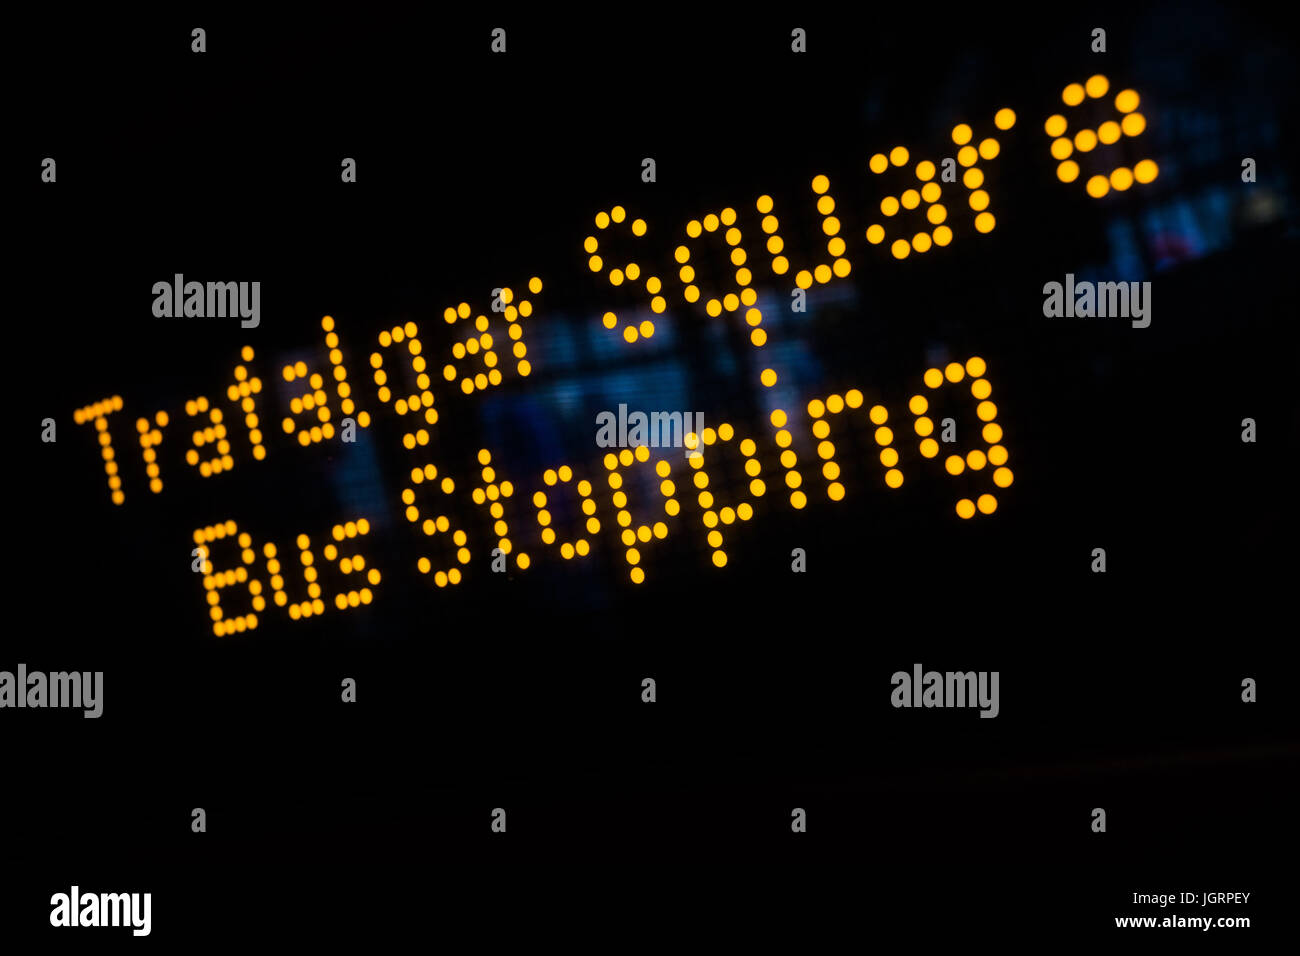 Ein Zeichen in einem Londoner Bus Haltestelle Trafalgar Sq, London Stockfoto